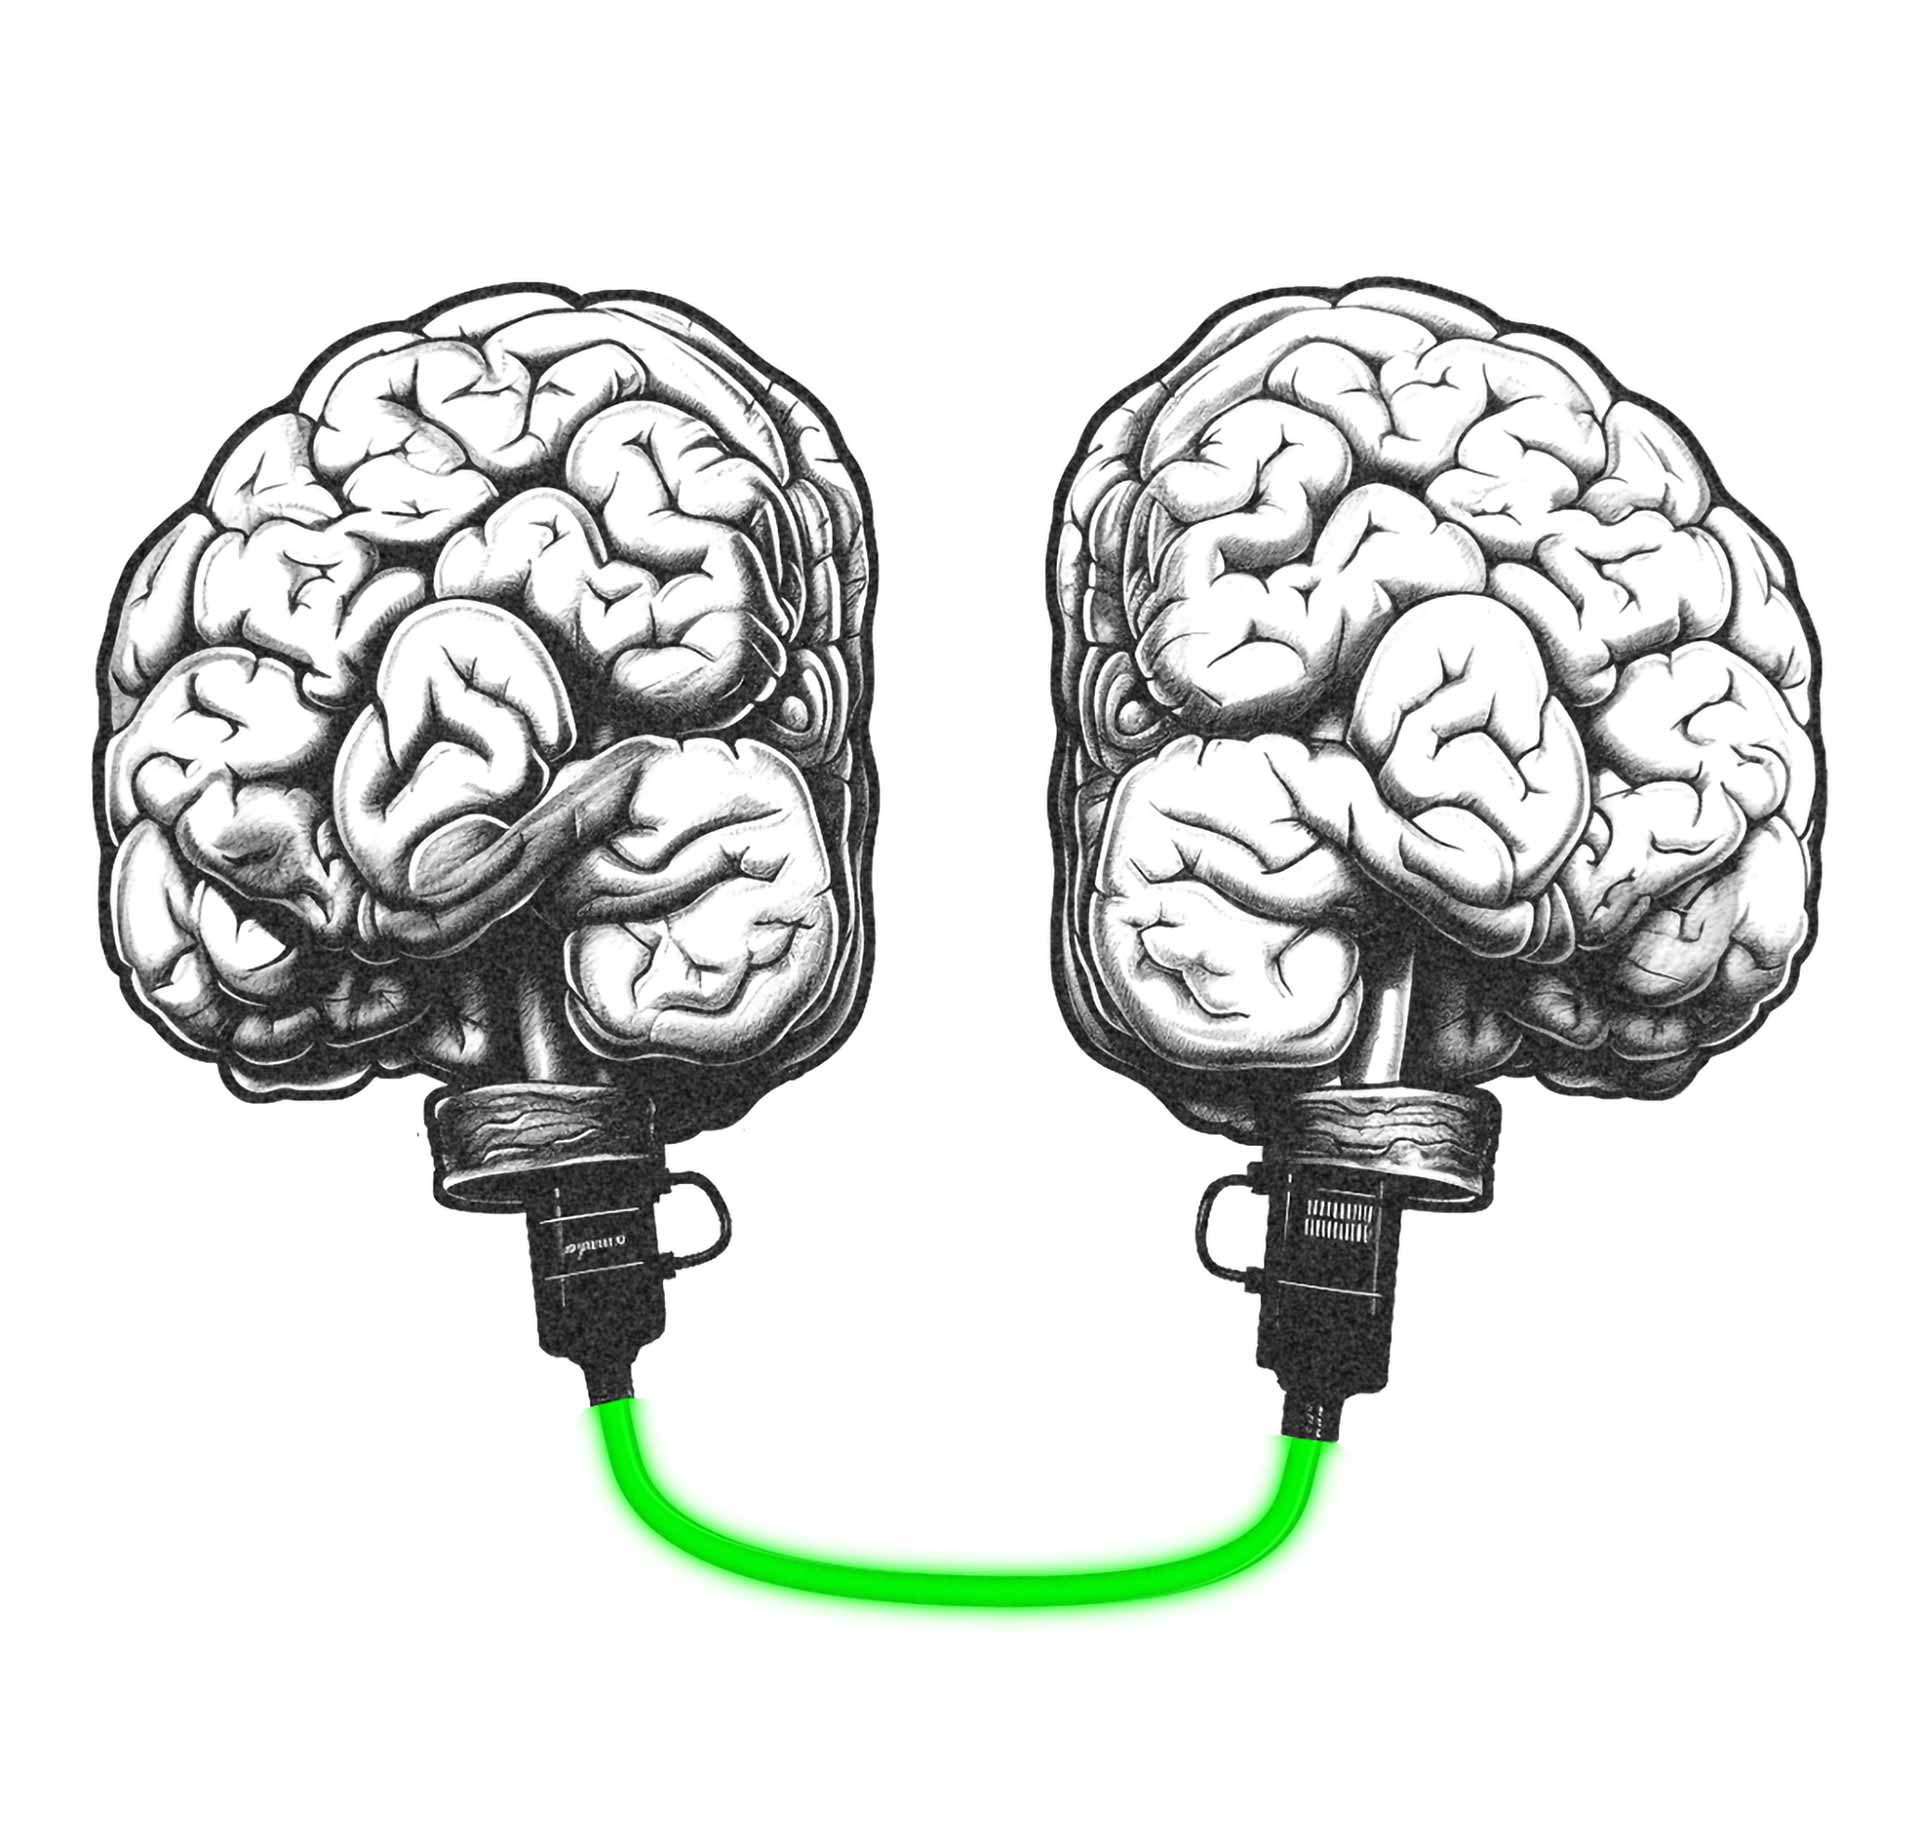 Eine Zeichnung von zwei Gehirnhälften, die mit einem dicken Datenkabel miteinander verbunden sind.